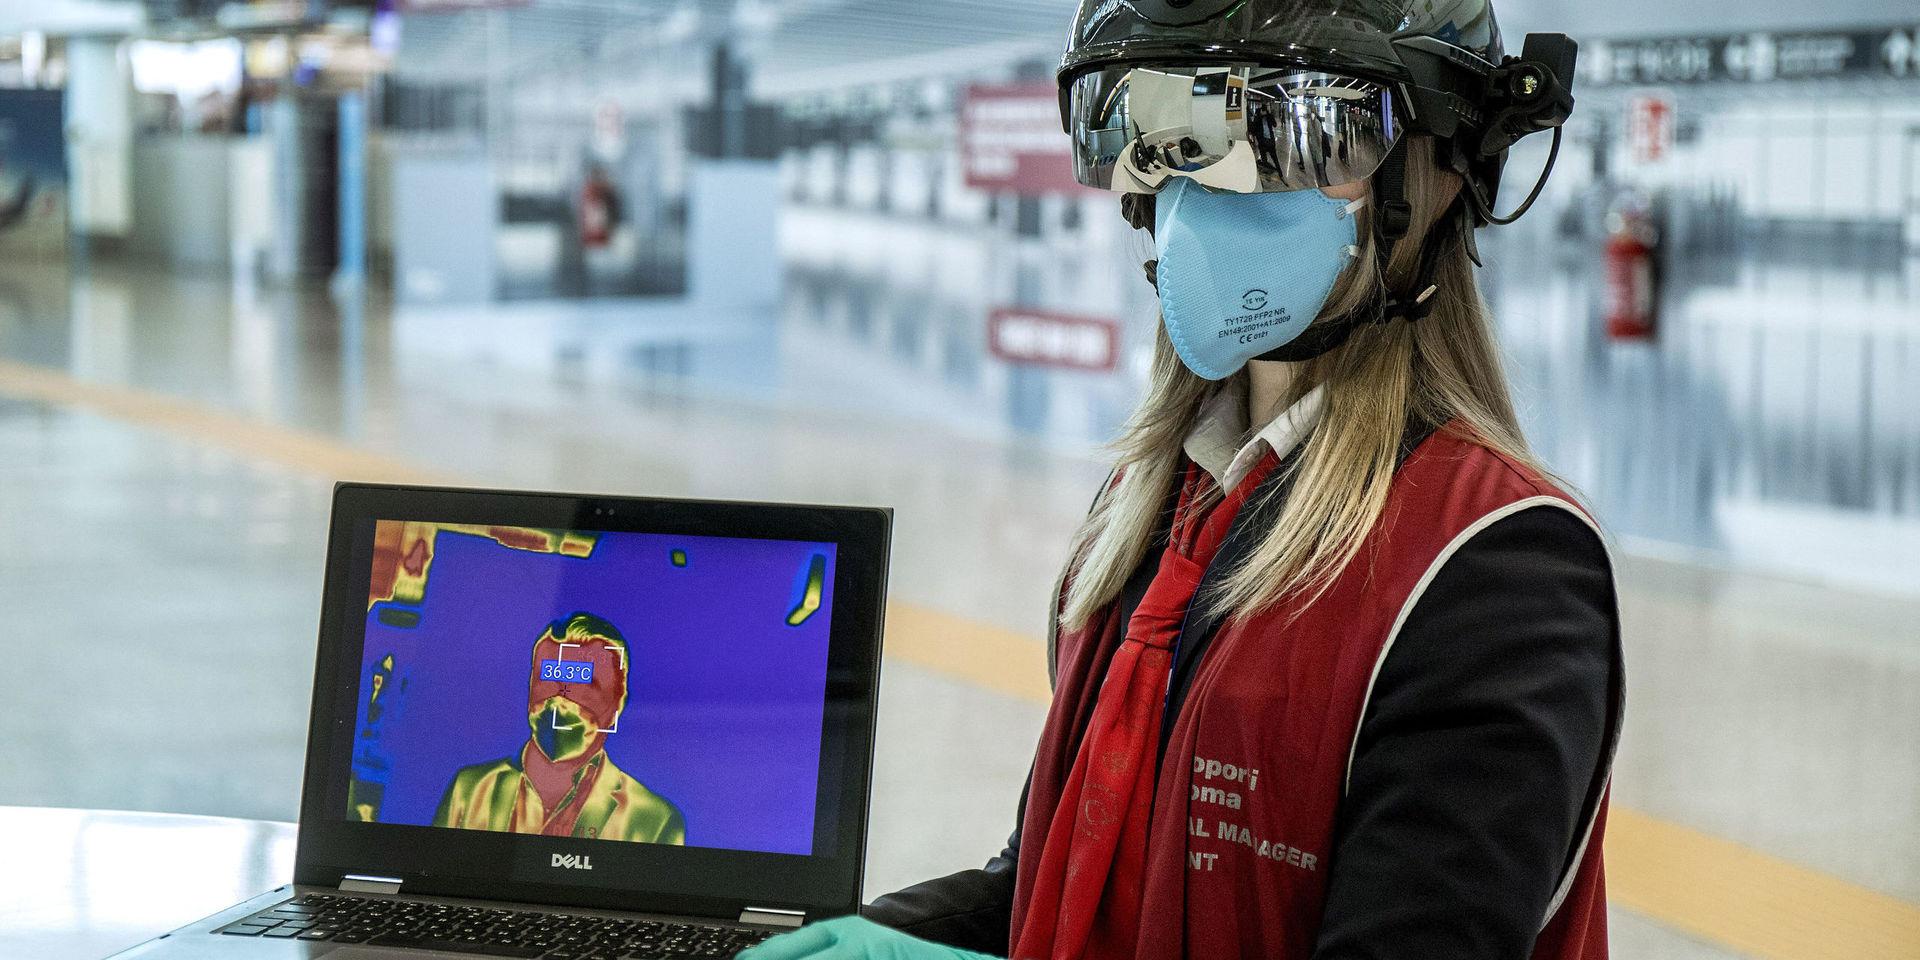 En medarbetare vid Romflygplatsen Leonardo da Vinci använder sig av en så kallad smarthjälm för att mäta kroppstemperaturen hos passagerare.